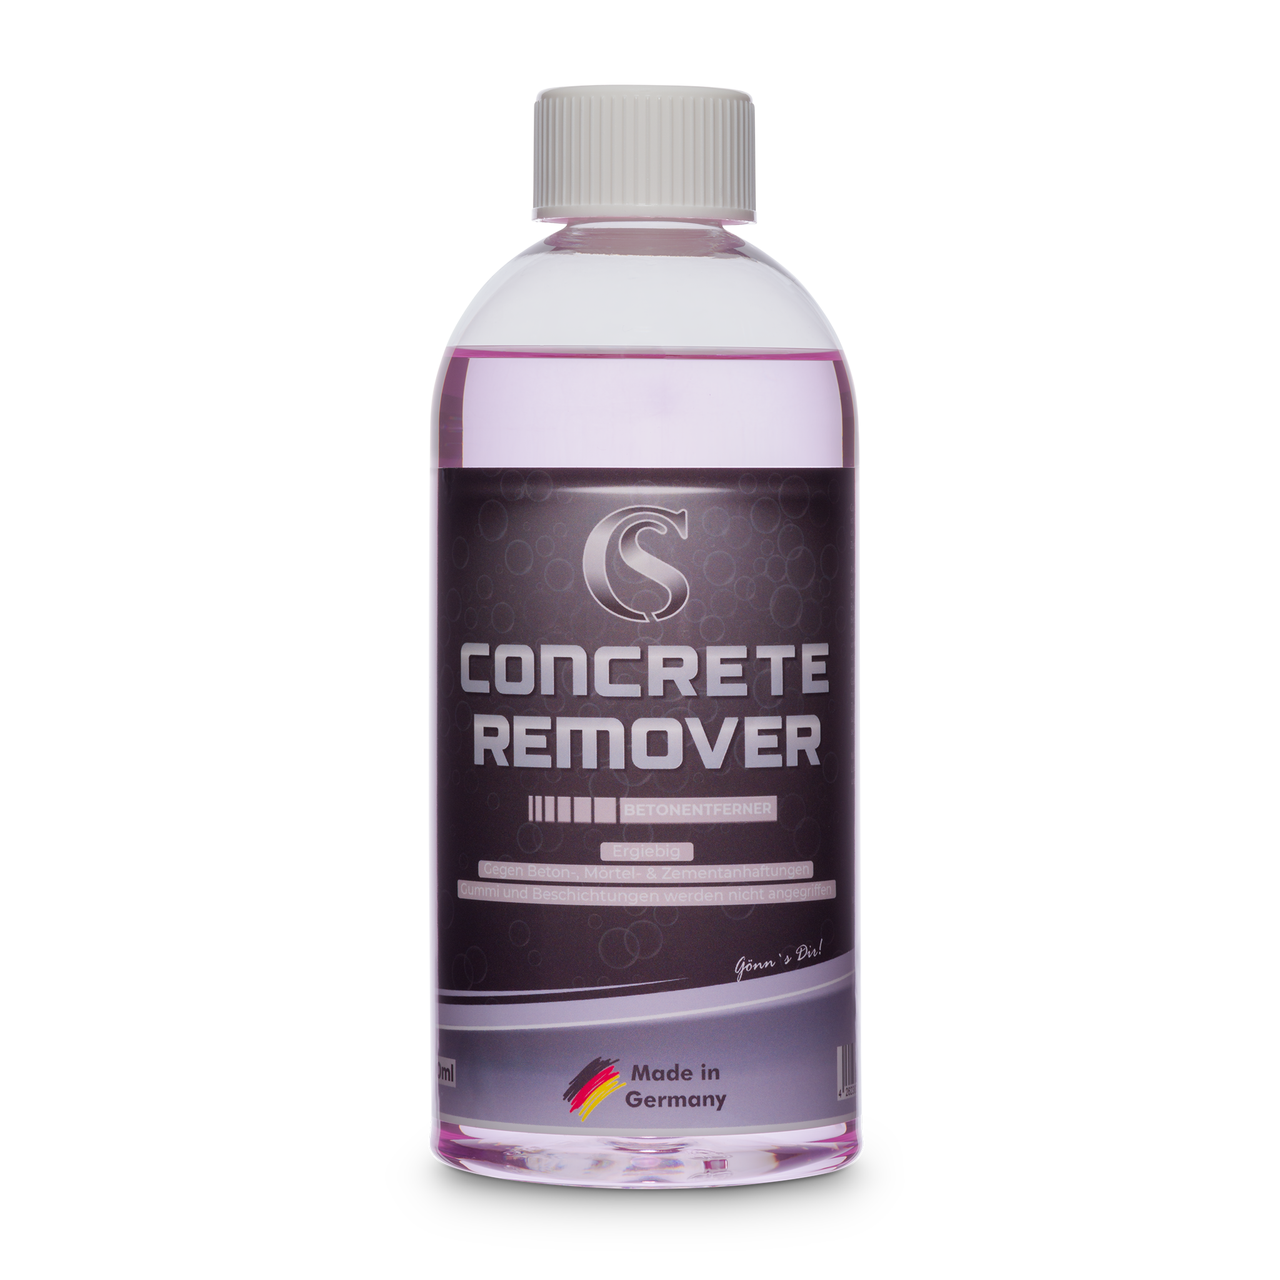 Car Sense Concrete Remover 0,5 L ist ein Spezialprodukt mit dem das Lösen von Beton-, Mörtel- und Zementanhaftungen einfach wird.